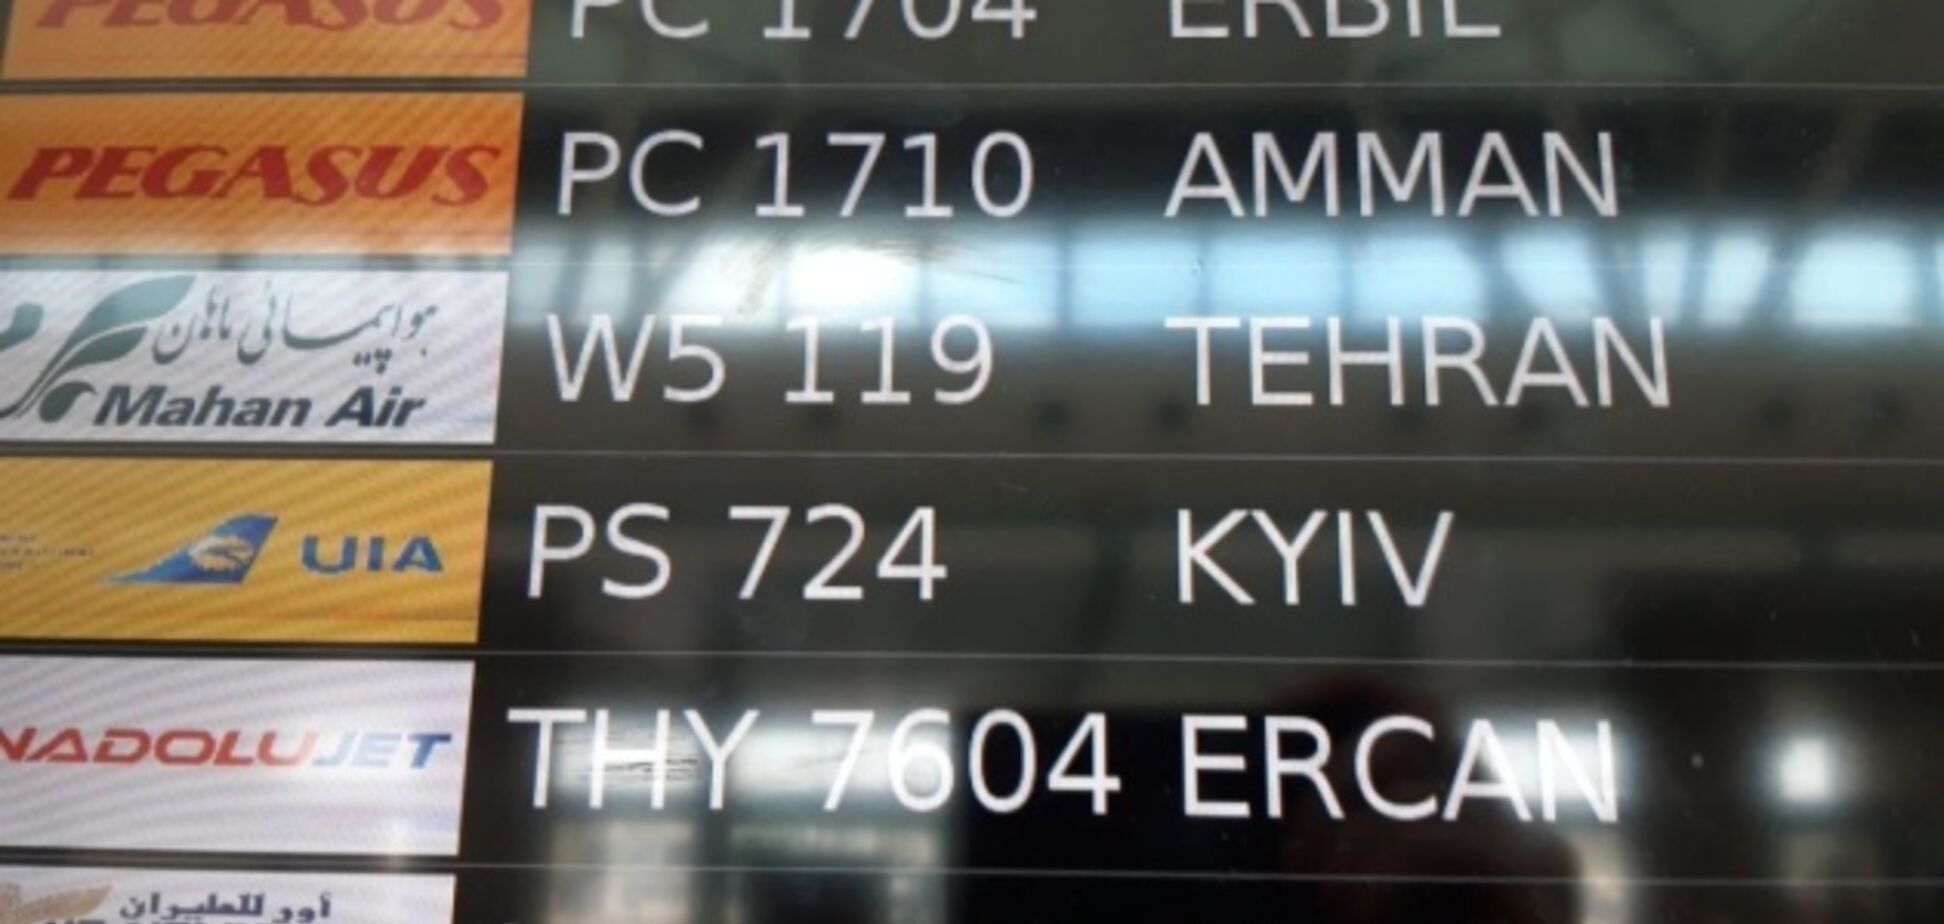 Перемога! Ще два аеропорти в світі почали писати Kyiv замість Kiev